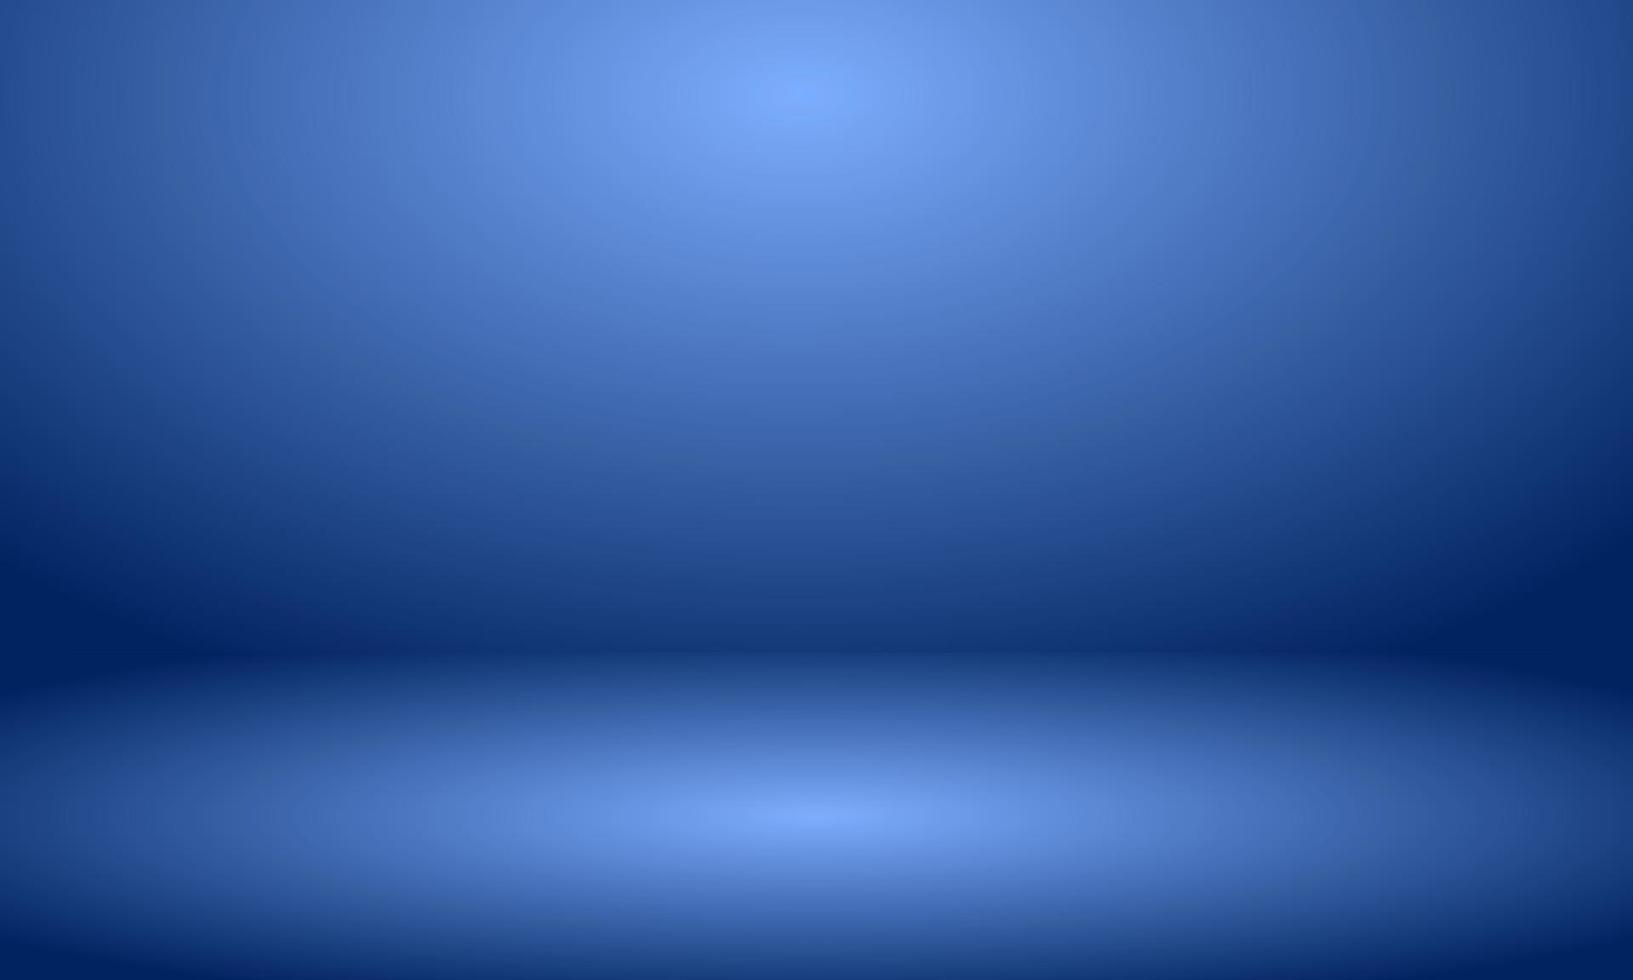 illustration blue room 3d background vector